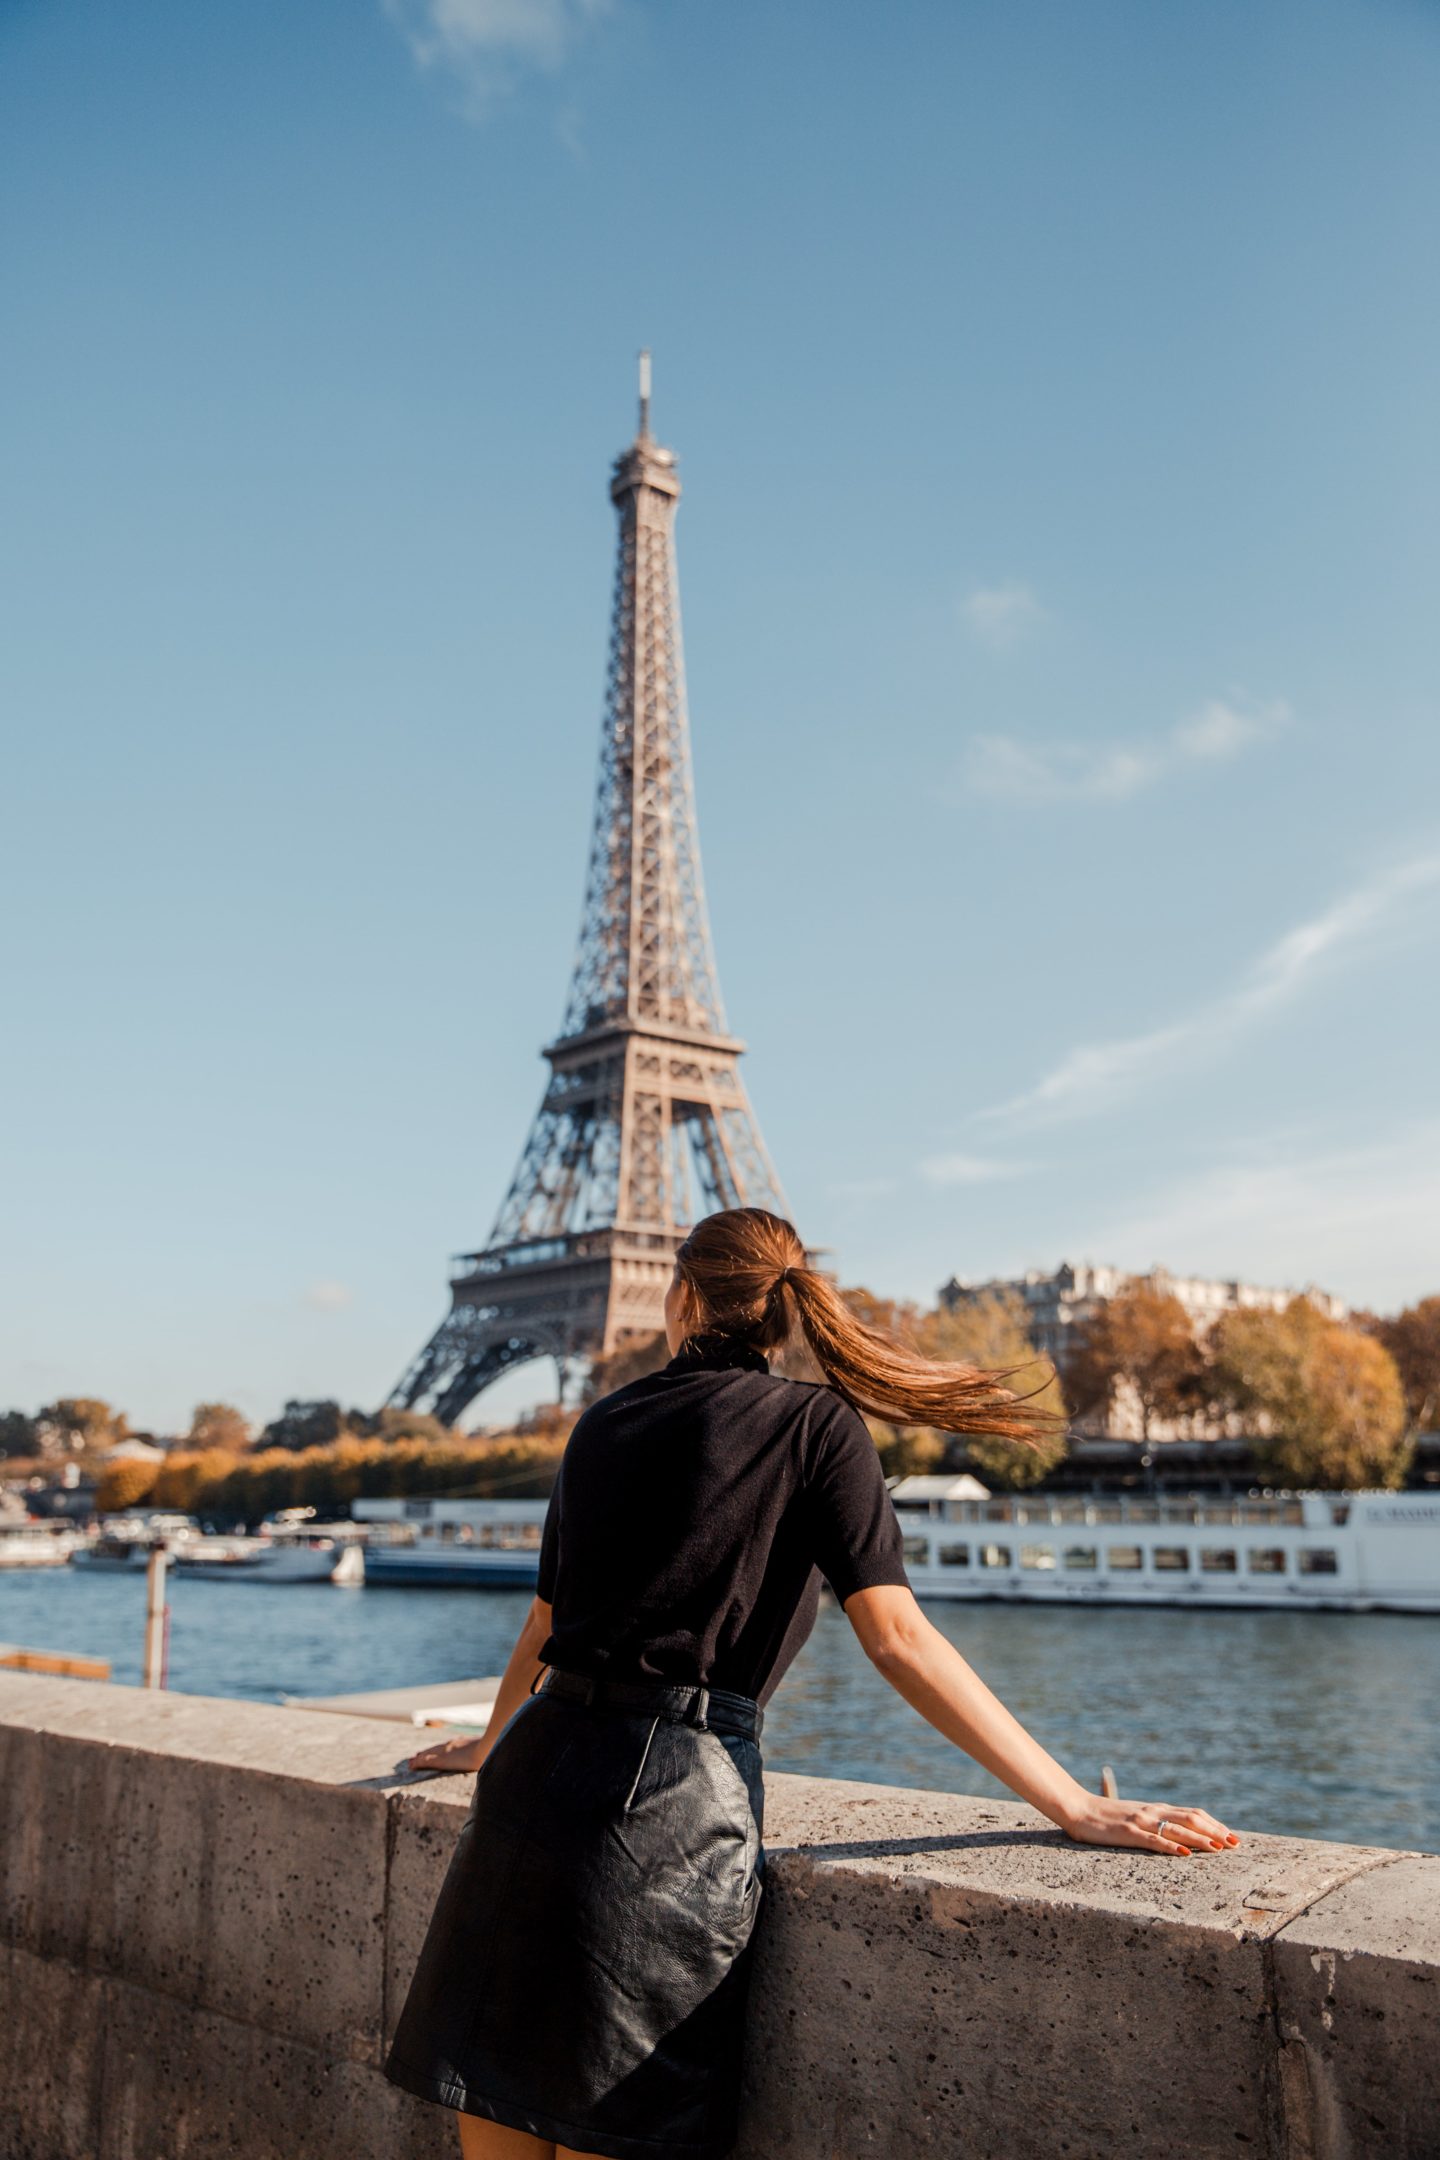 The Best Eiffel Tower Photo Spots | 7 Secret Places to View the Eiffel Tower - Dana Berez